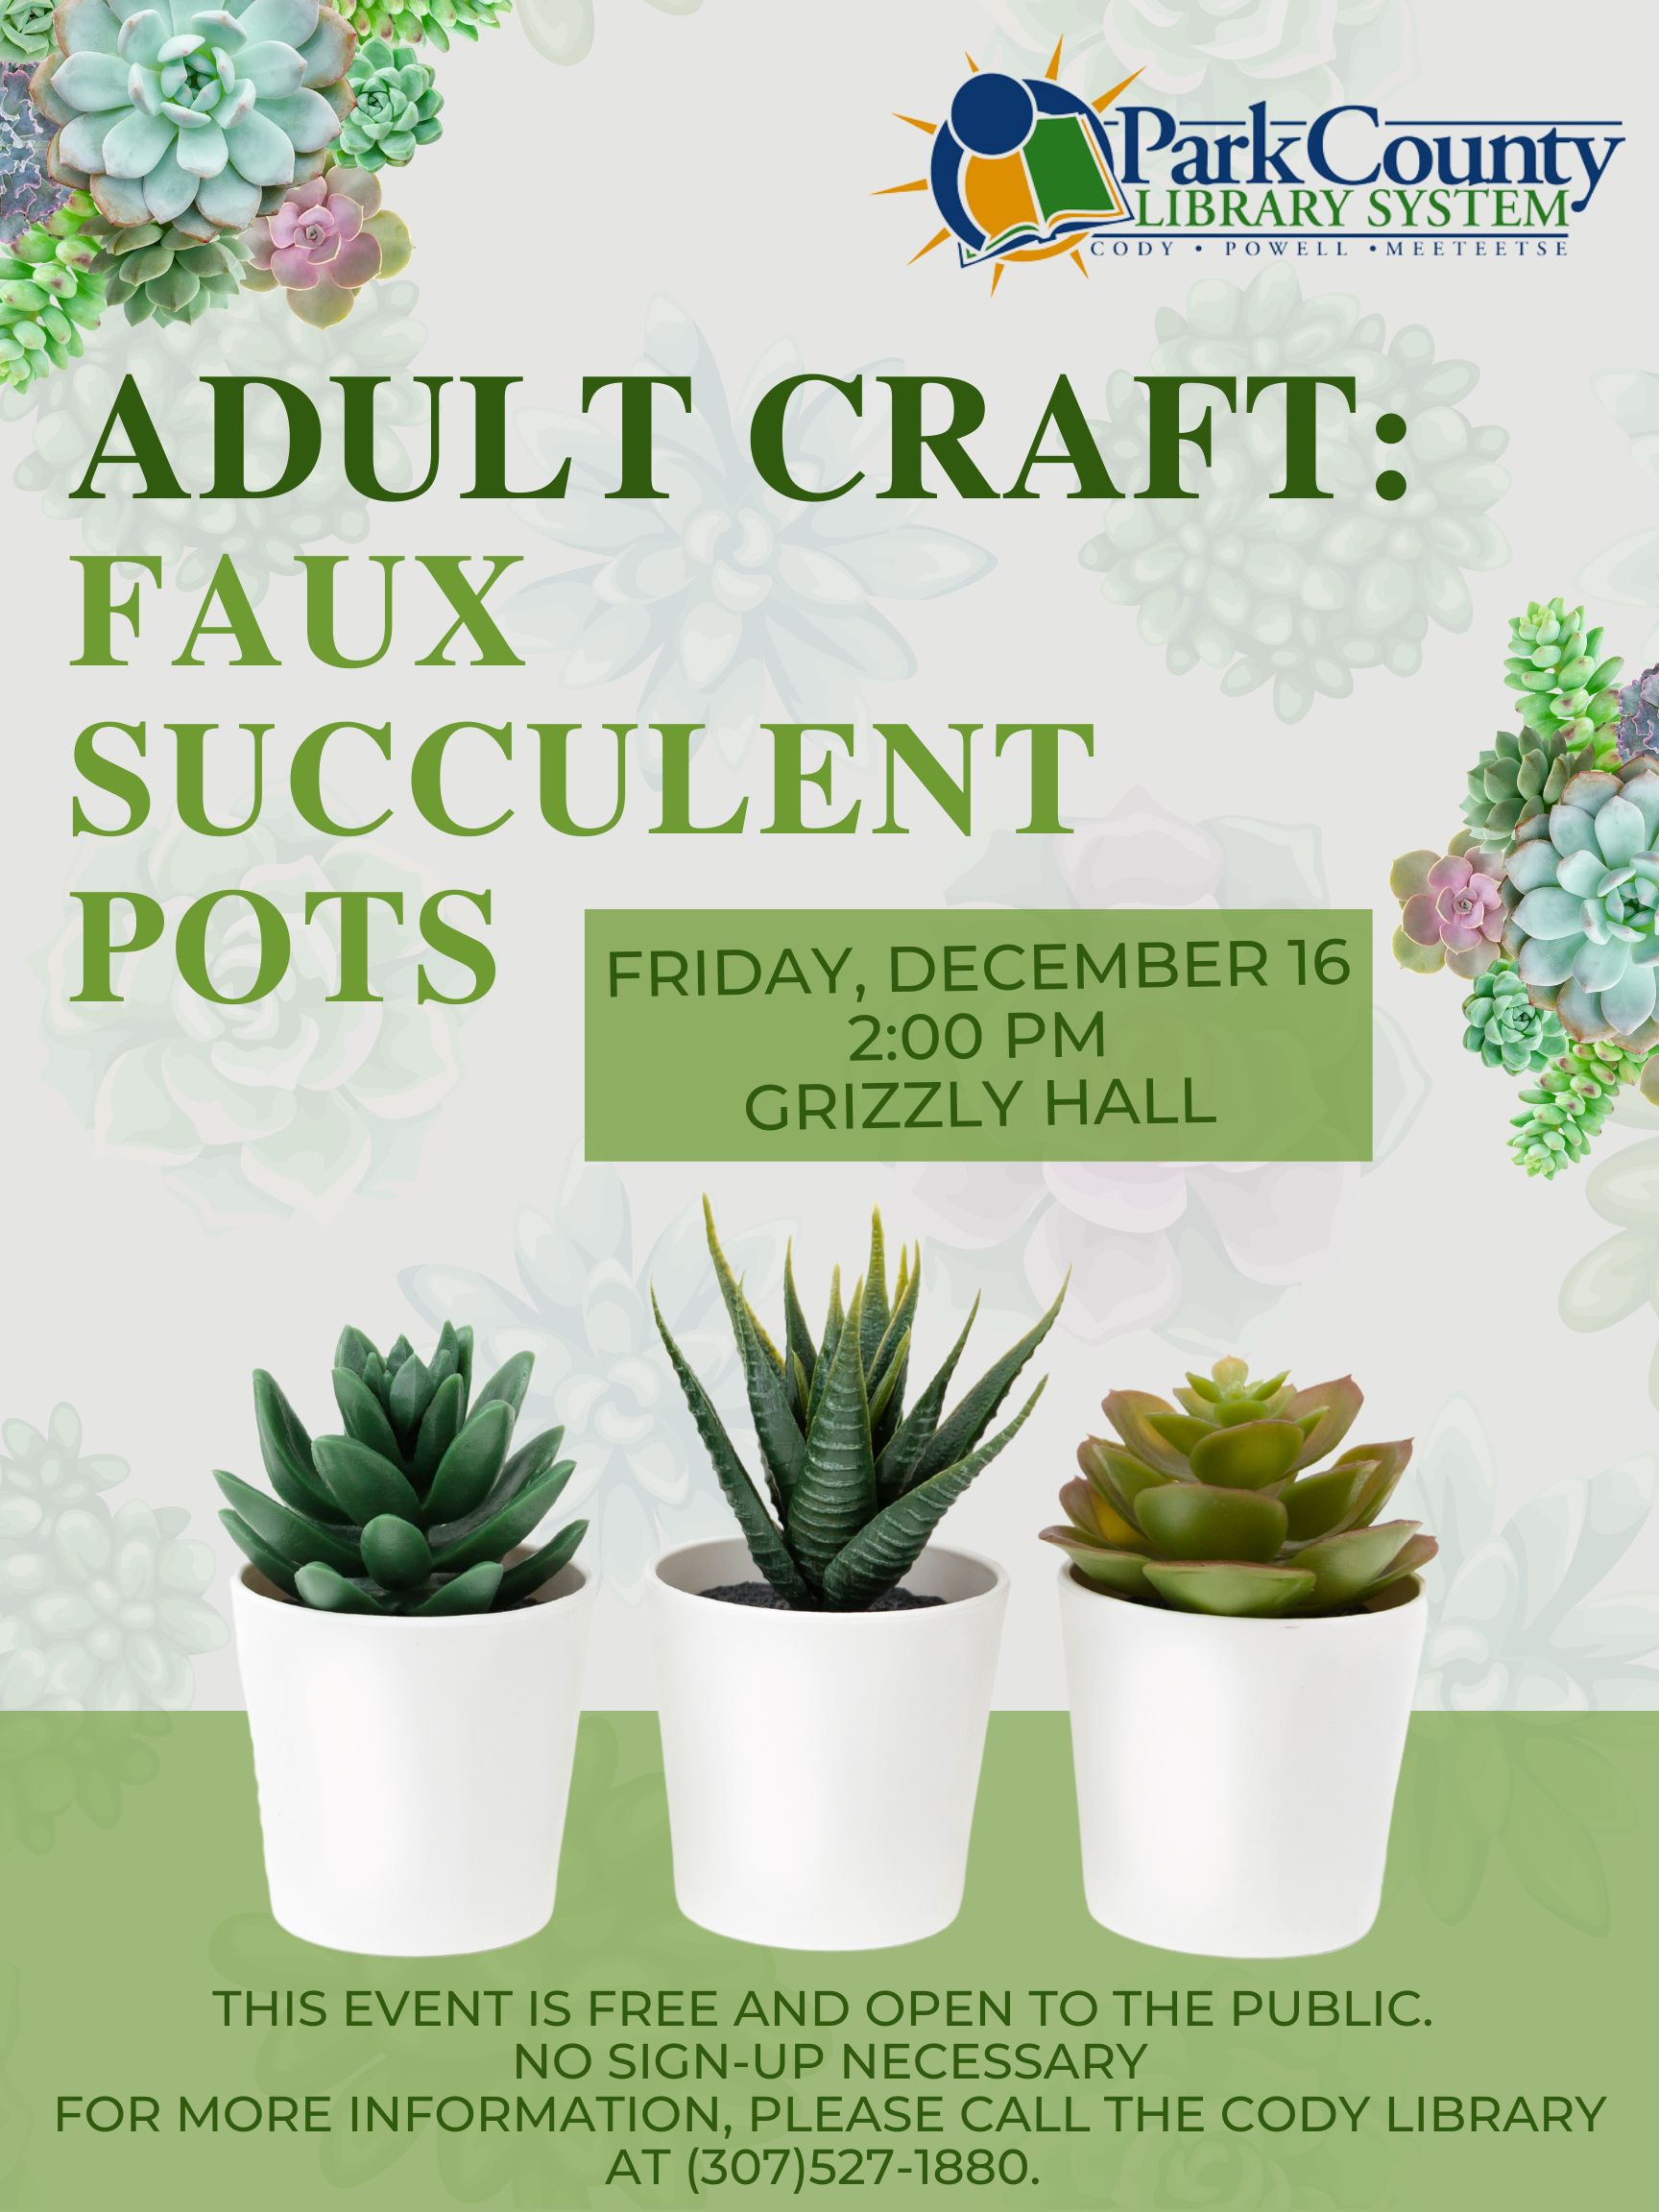 Adult Craft: Faux Succulent Pots